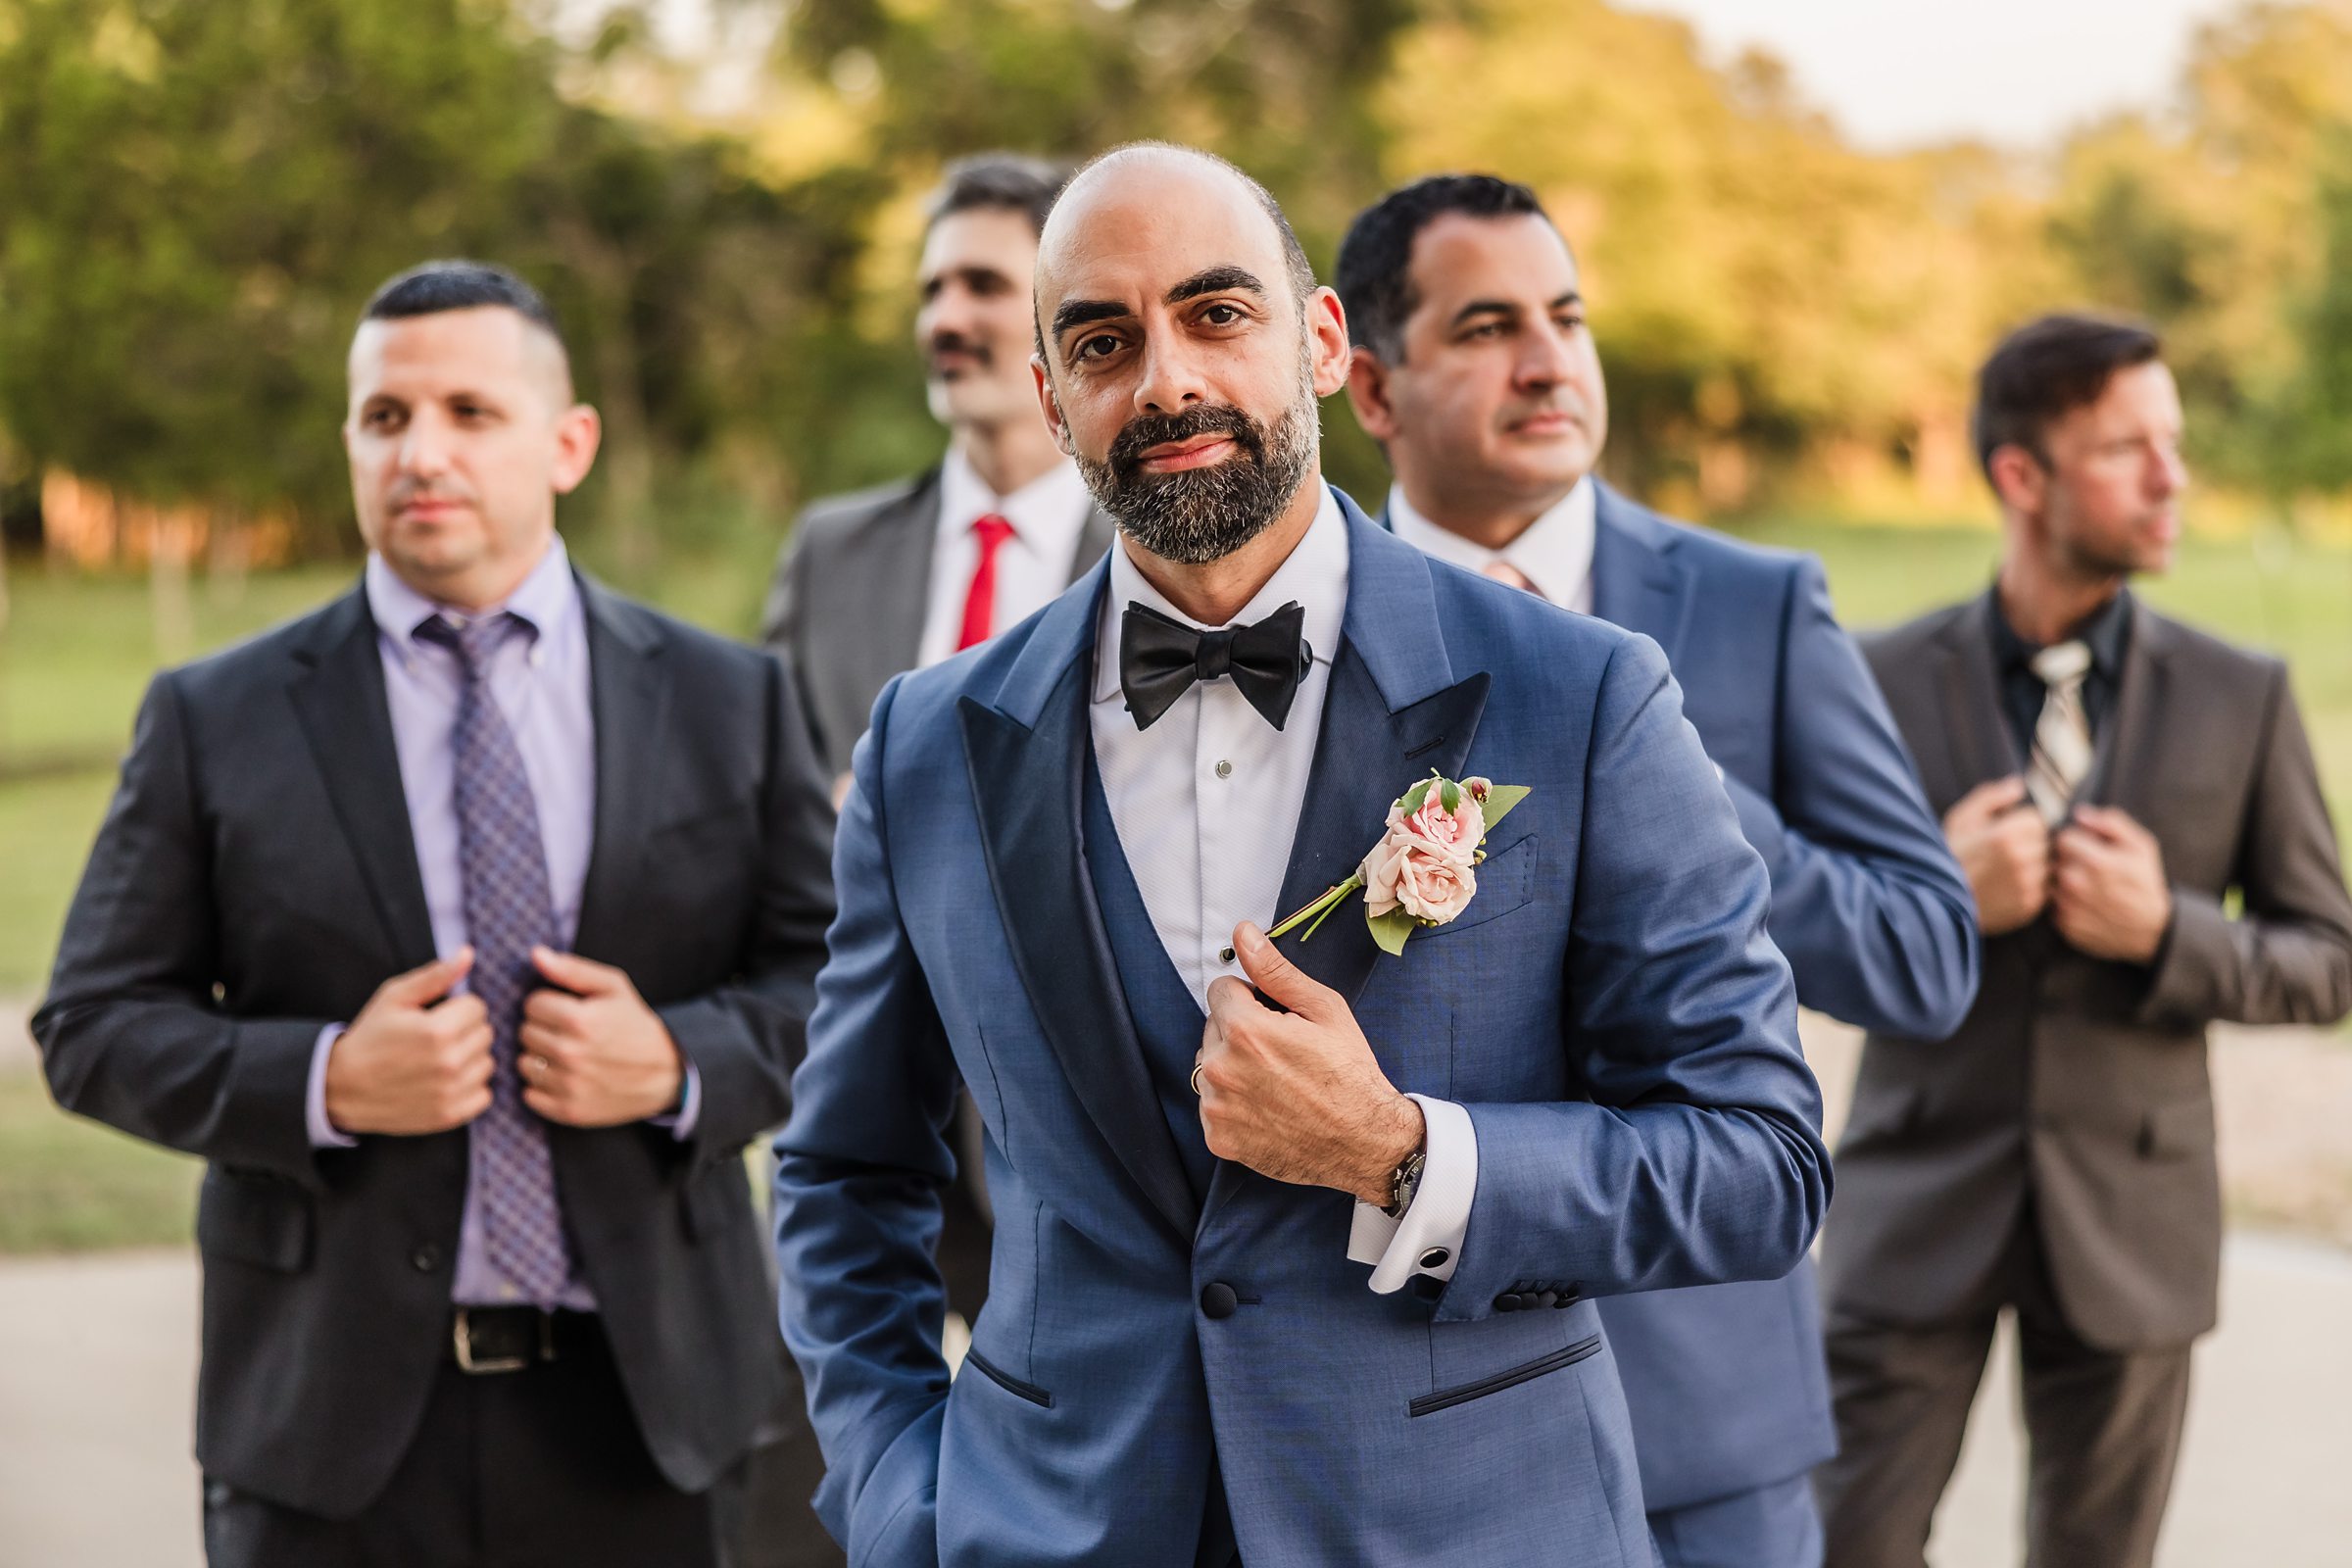 Groom and groomsmen during a wedding at Shiraz Garden in Bastrop, Texas.